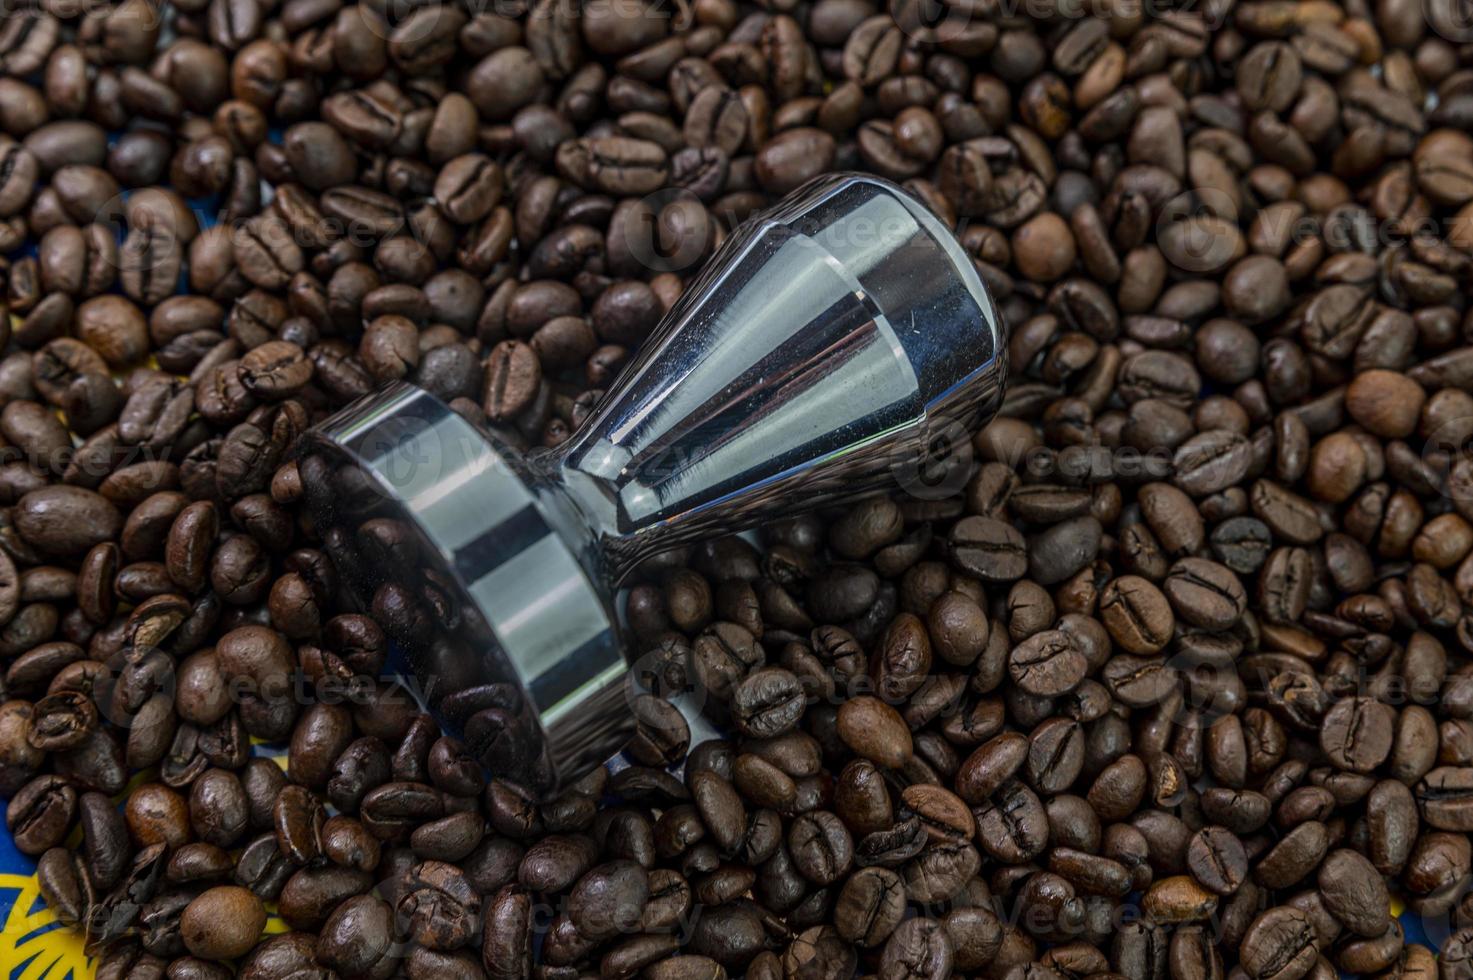 grains de café avec presse à café en acier photo